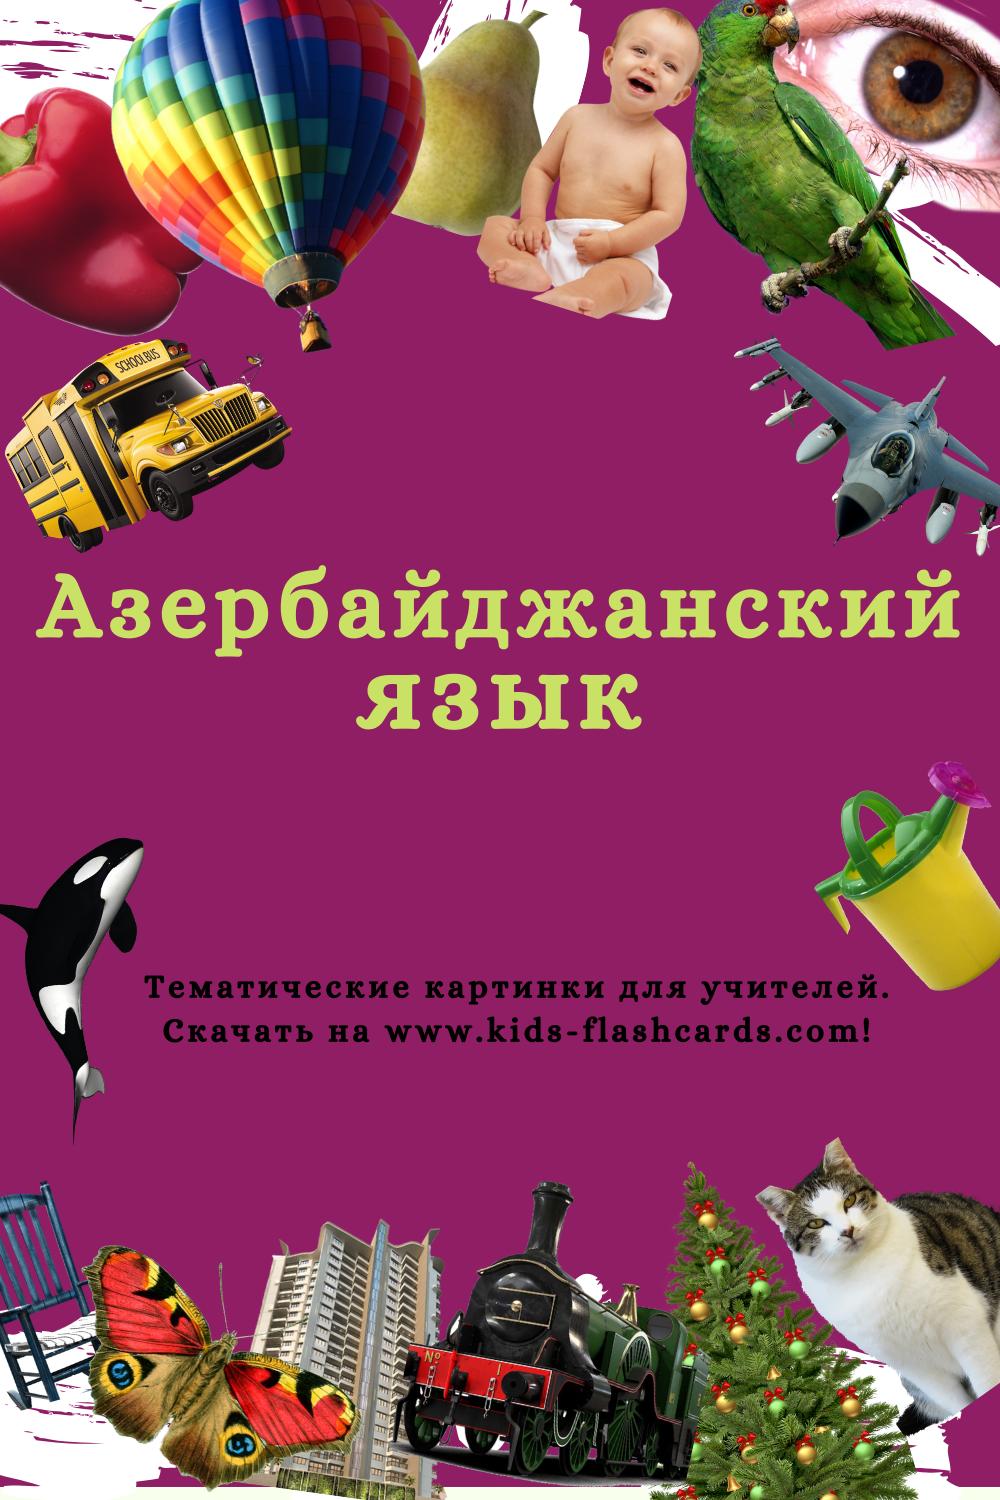 Азербайджанский язык - распечатки для детей